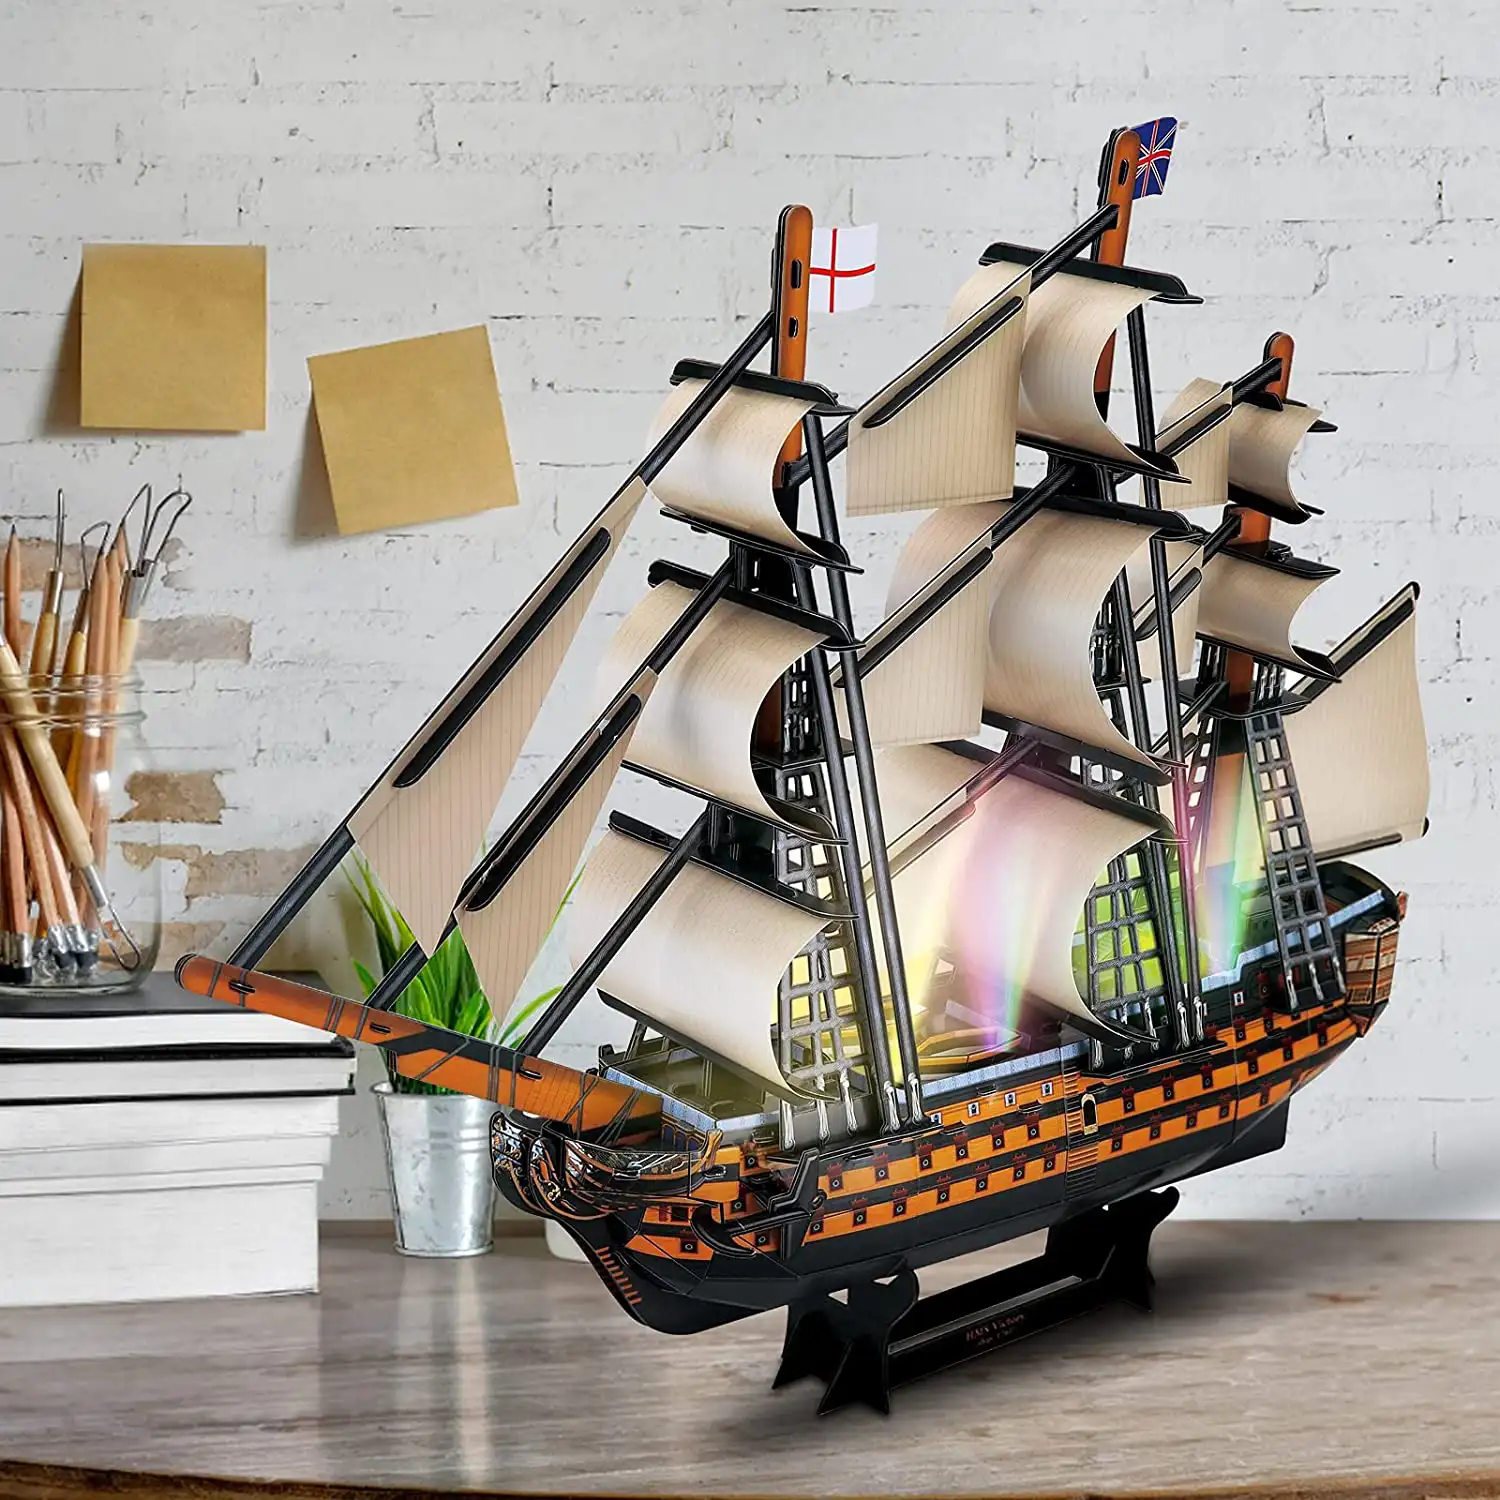 Puzzle 3D buque HSM VISTORY con luces LED. 55,5*11,8*41,5 cms, 163 piezas.